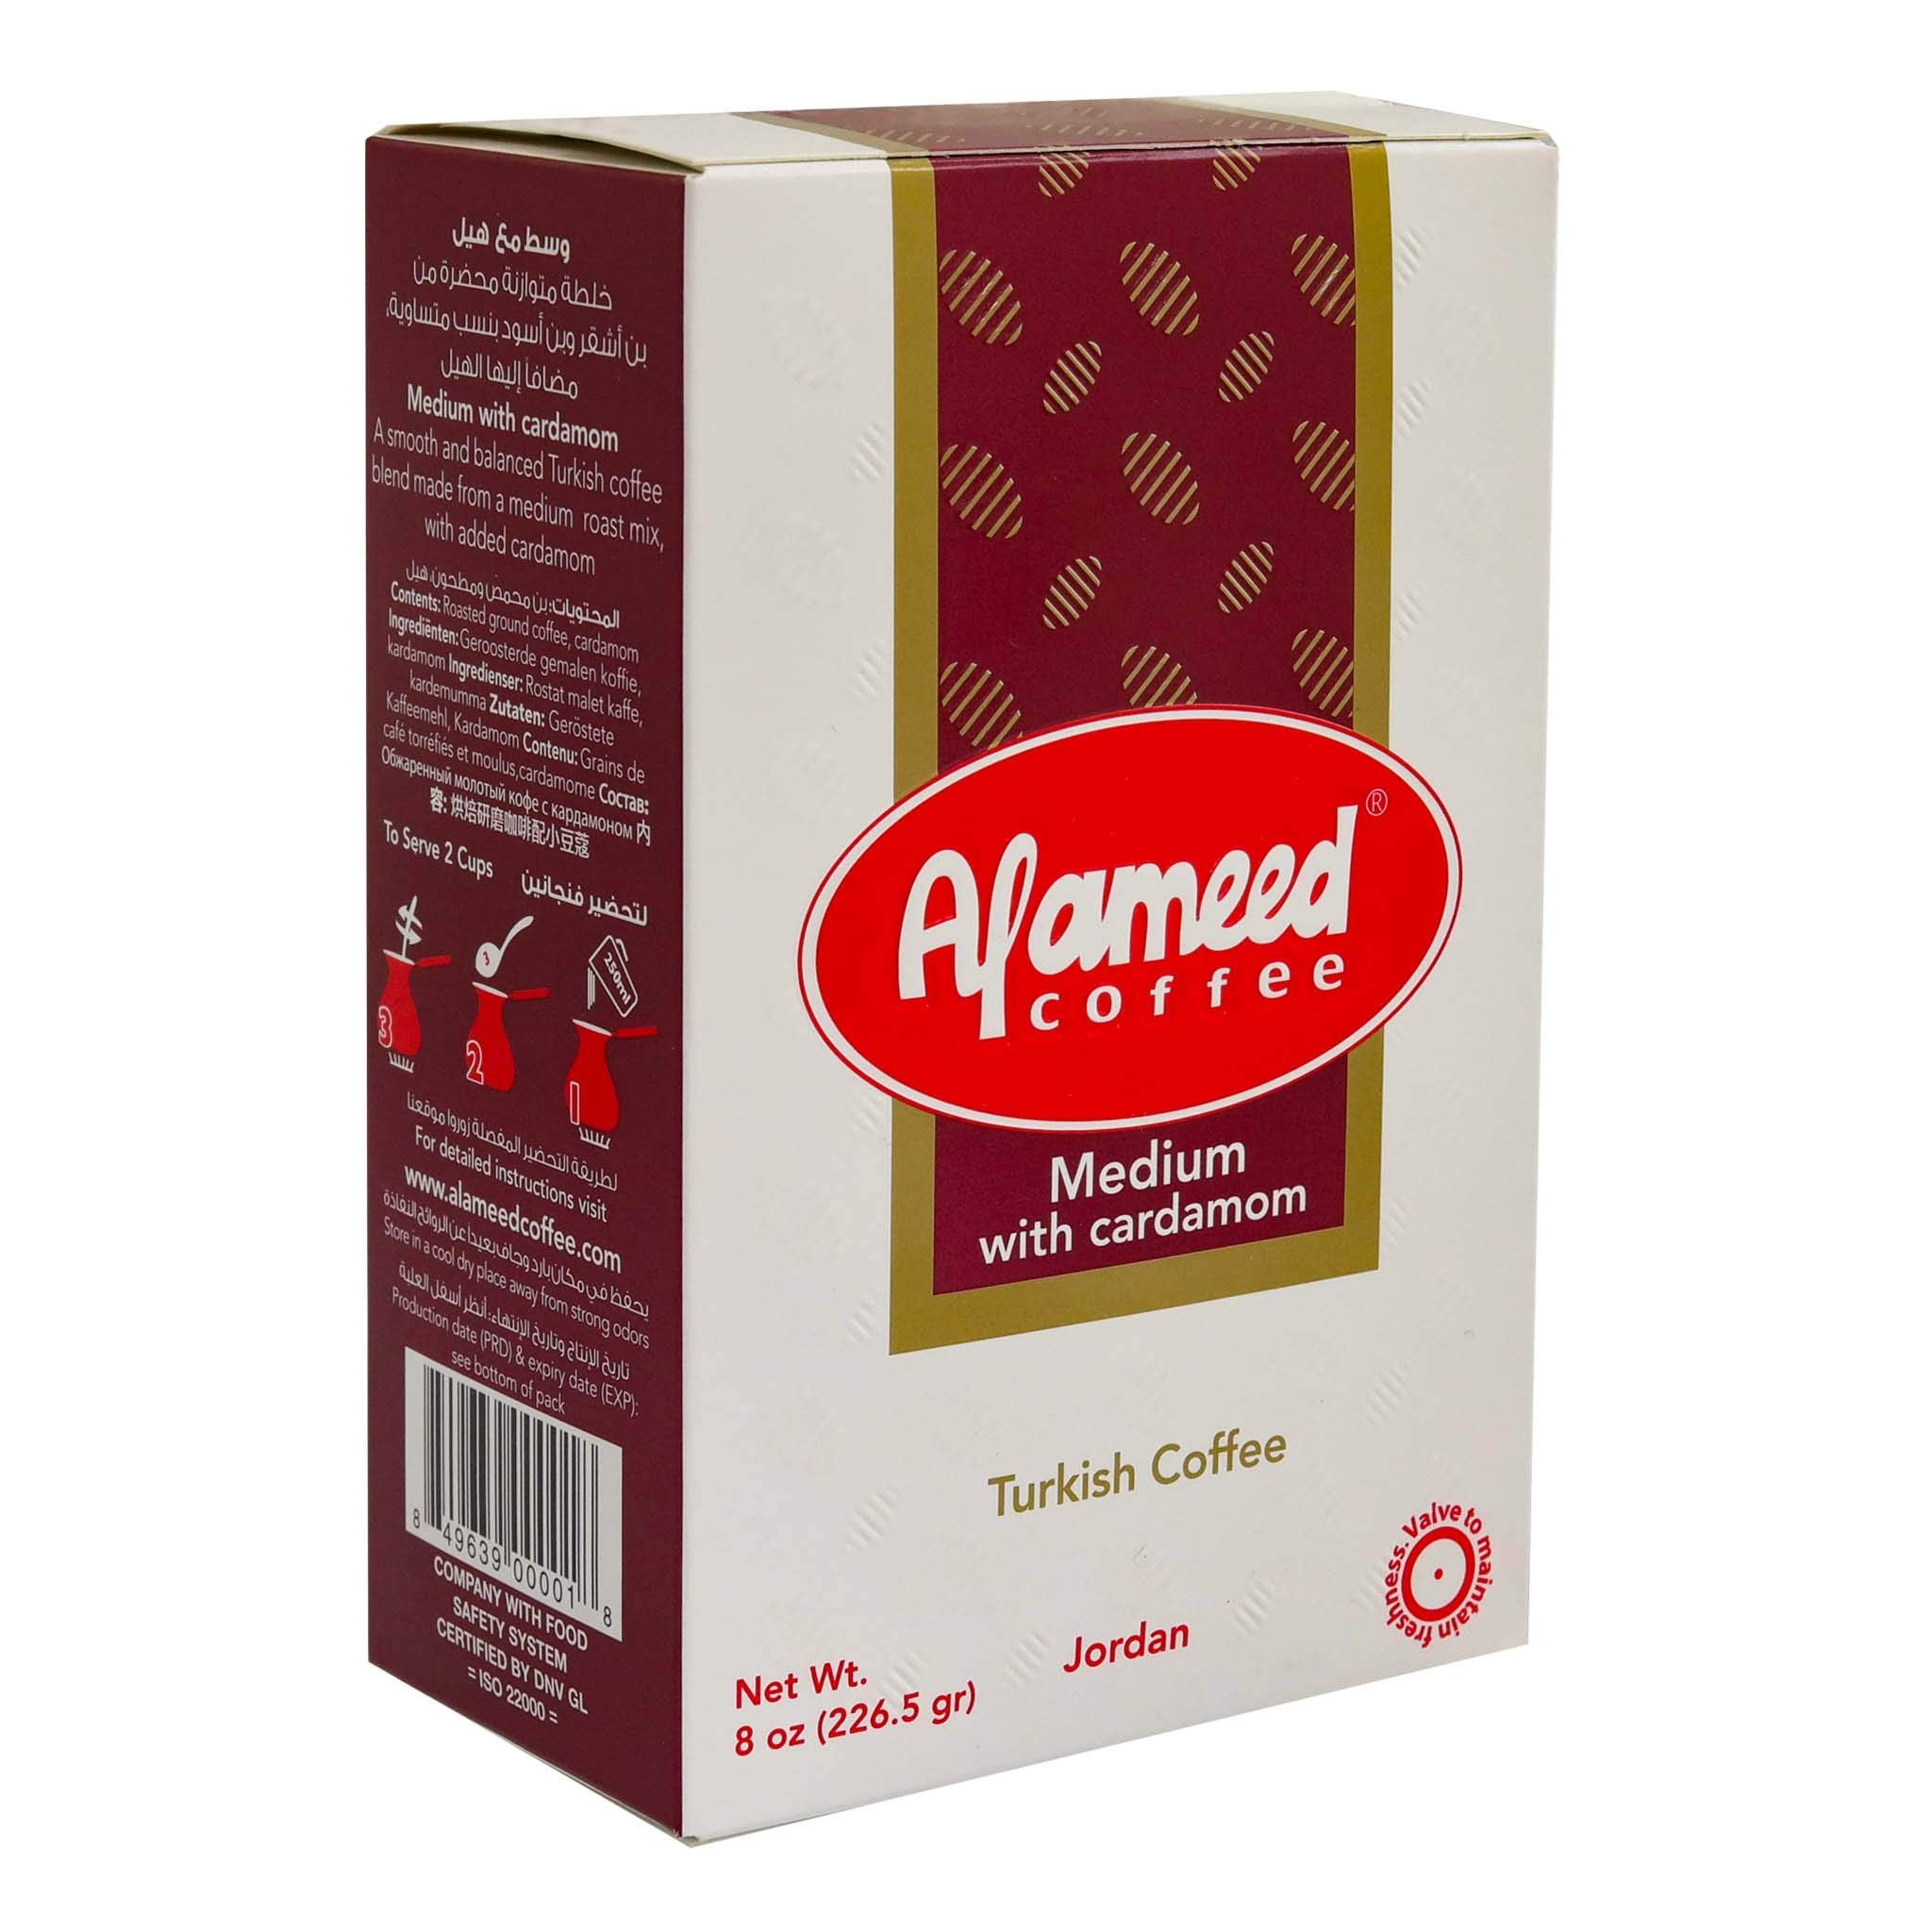 al-ameed-coffee-with-cardamom-226g